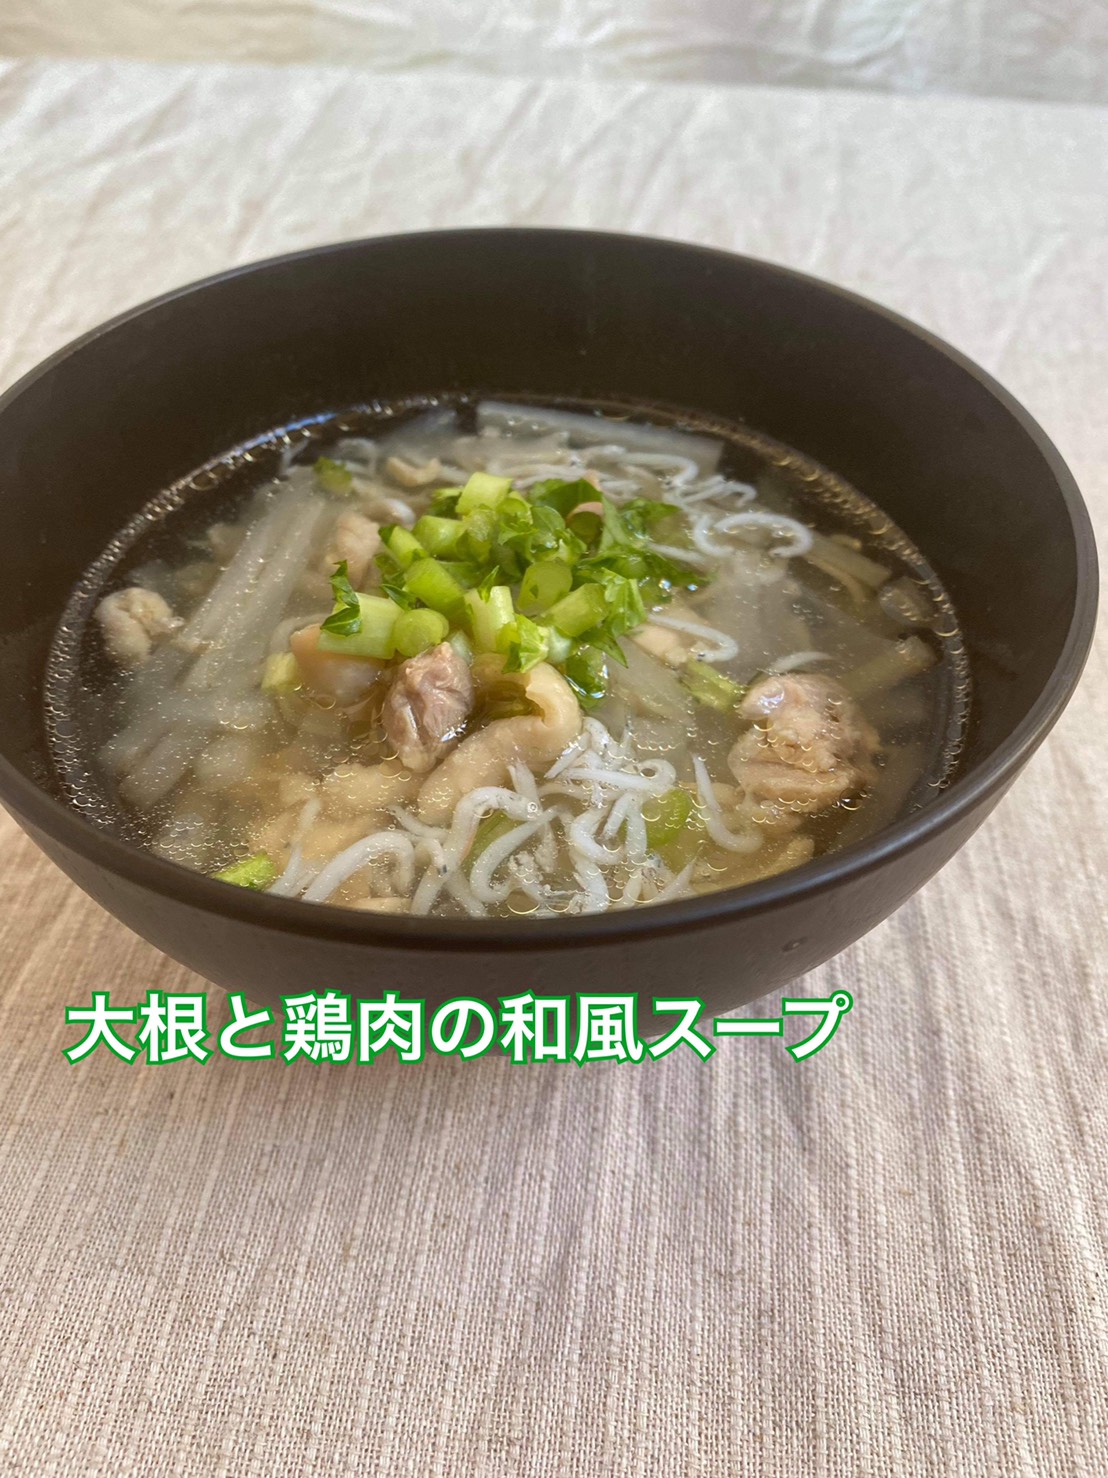 【楽ウマおうちごはん】大根と鶏肉の和風スープ